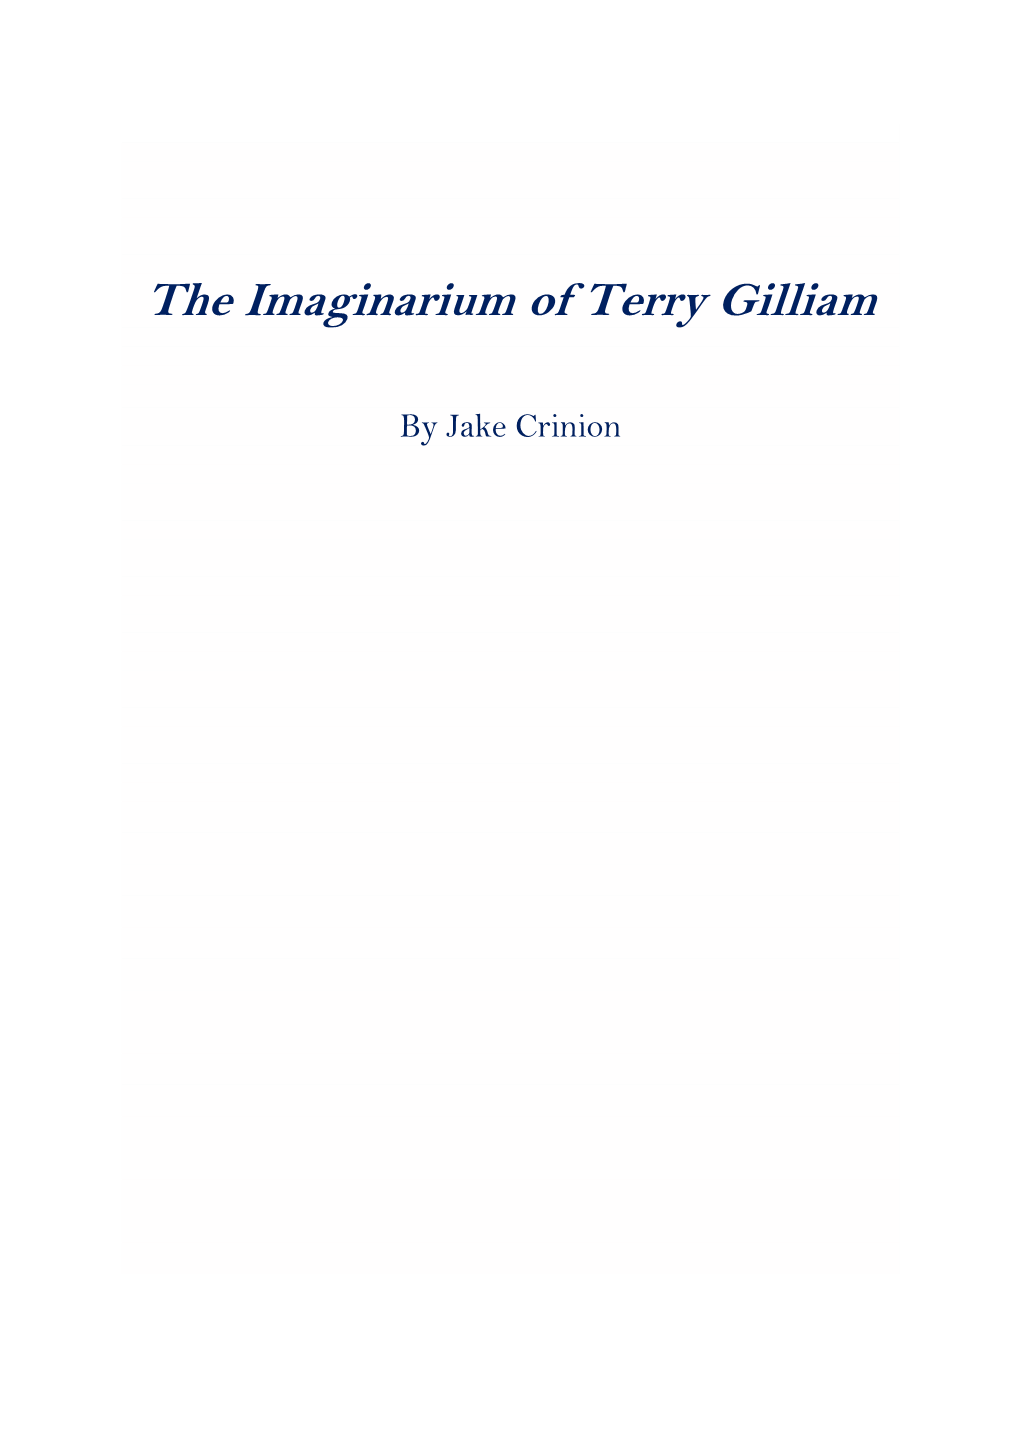 The Imaginarium of Terry Gilliam